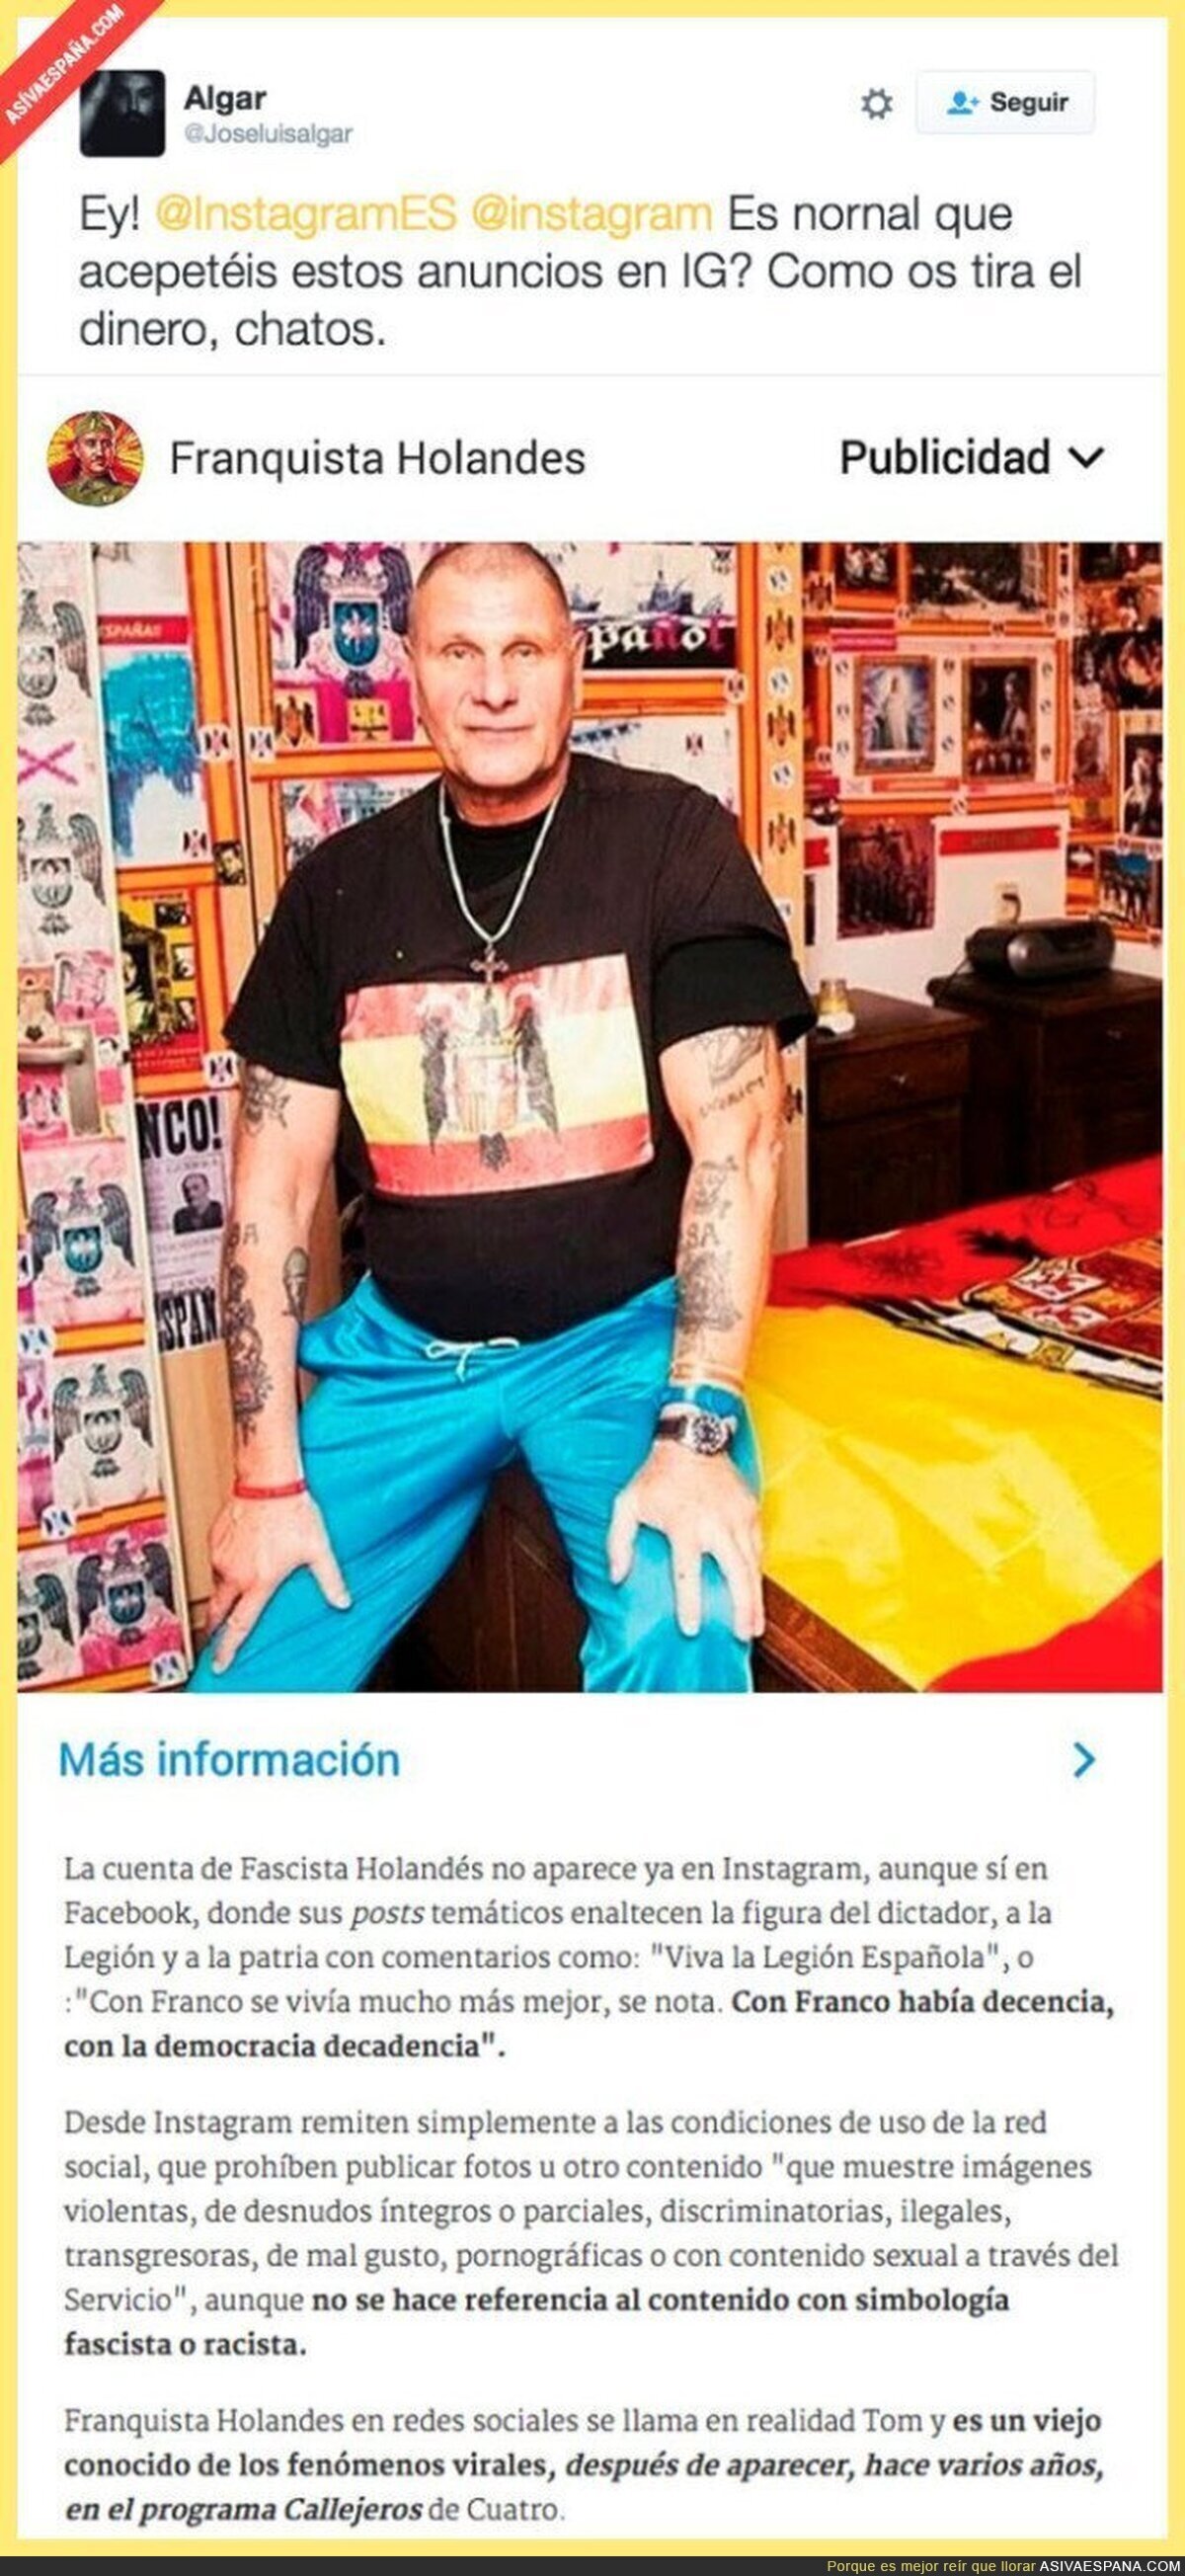 La publicidad que aparece en Instagram de un franquista que está indignando a todo el mundo